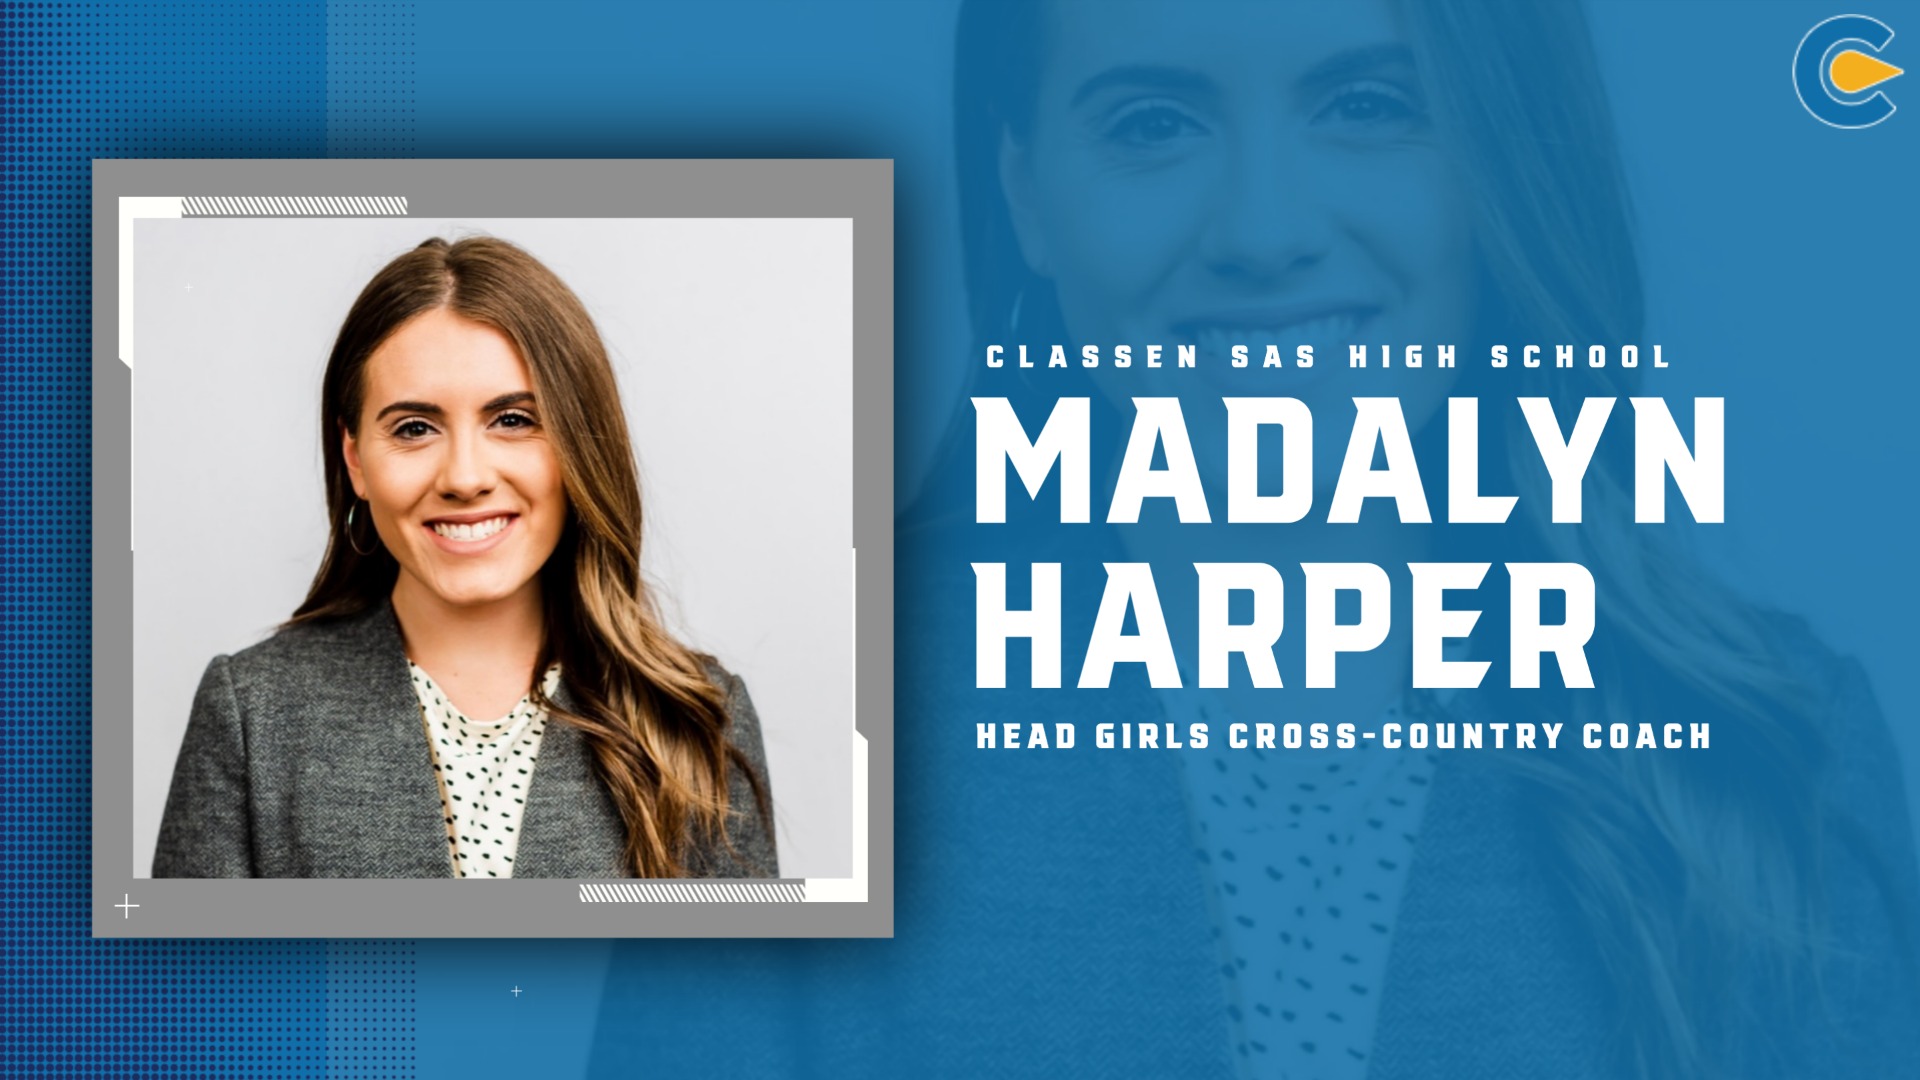 Slide 5 - Madalyn Harper Named Head Coach for Classen SAS Girls Cross-Country